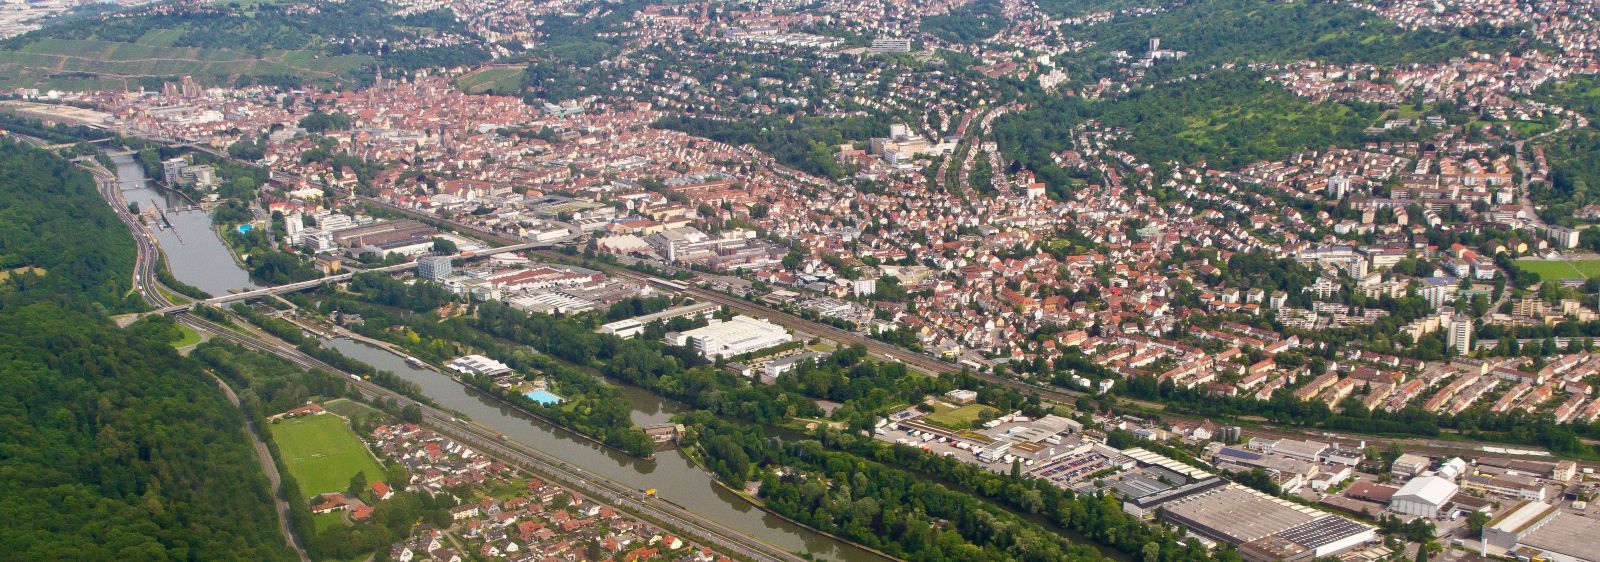 Luftbildaufnahme von Esslingen.